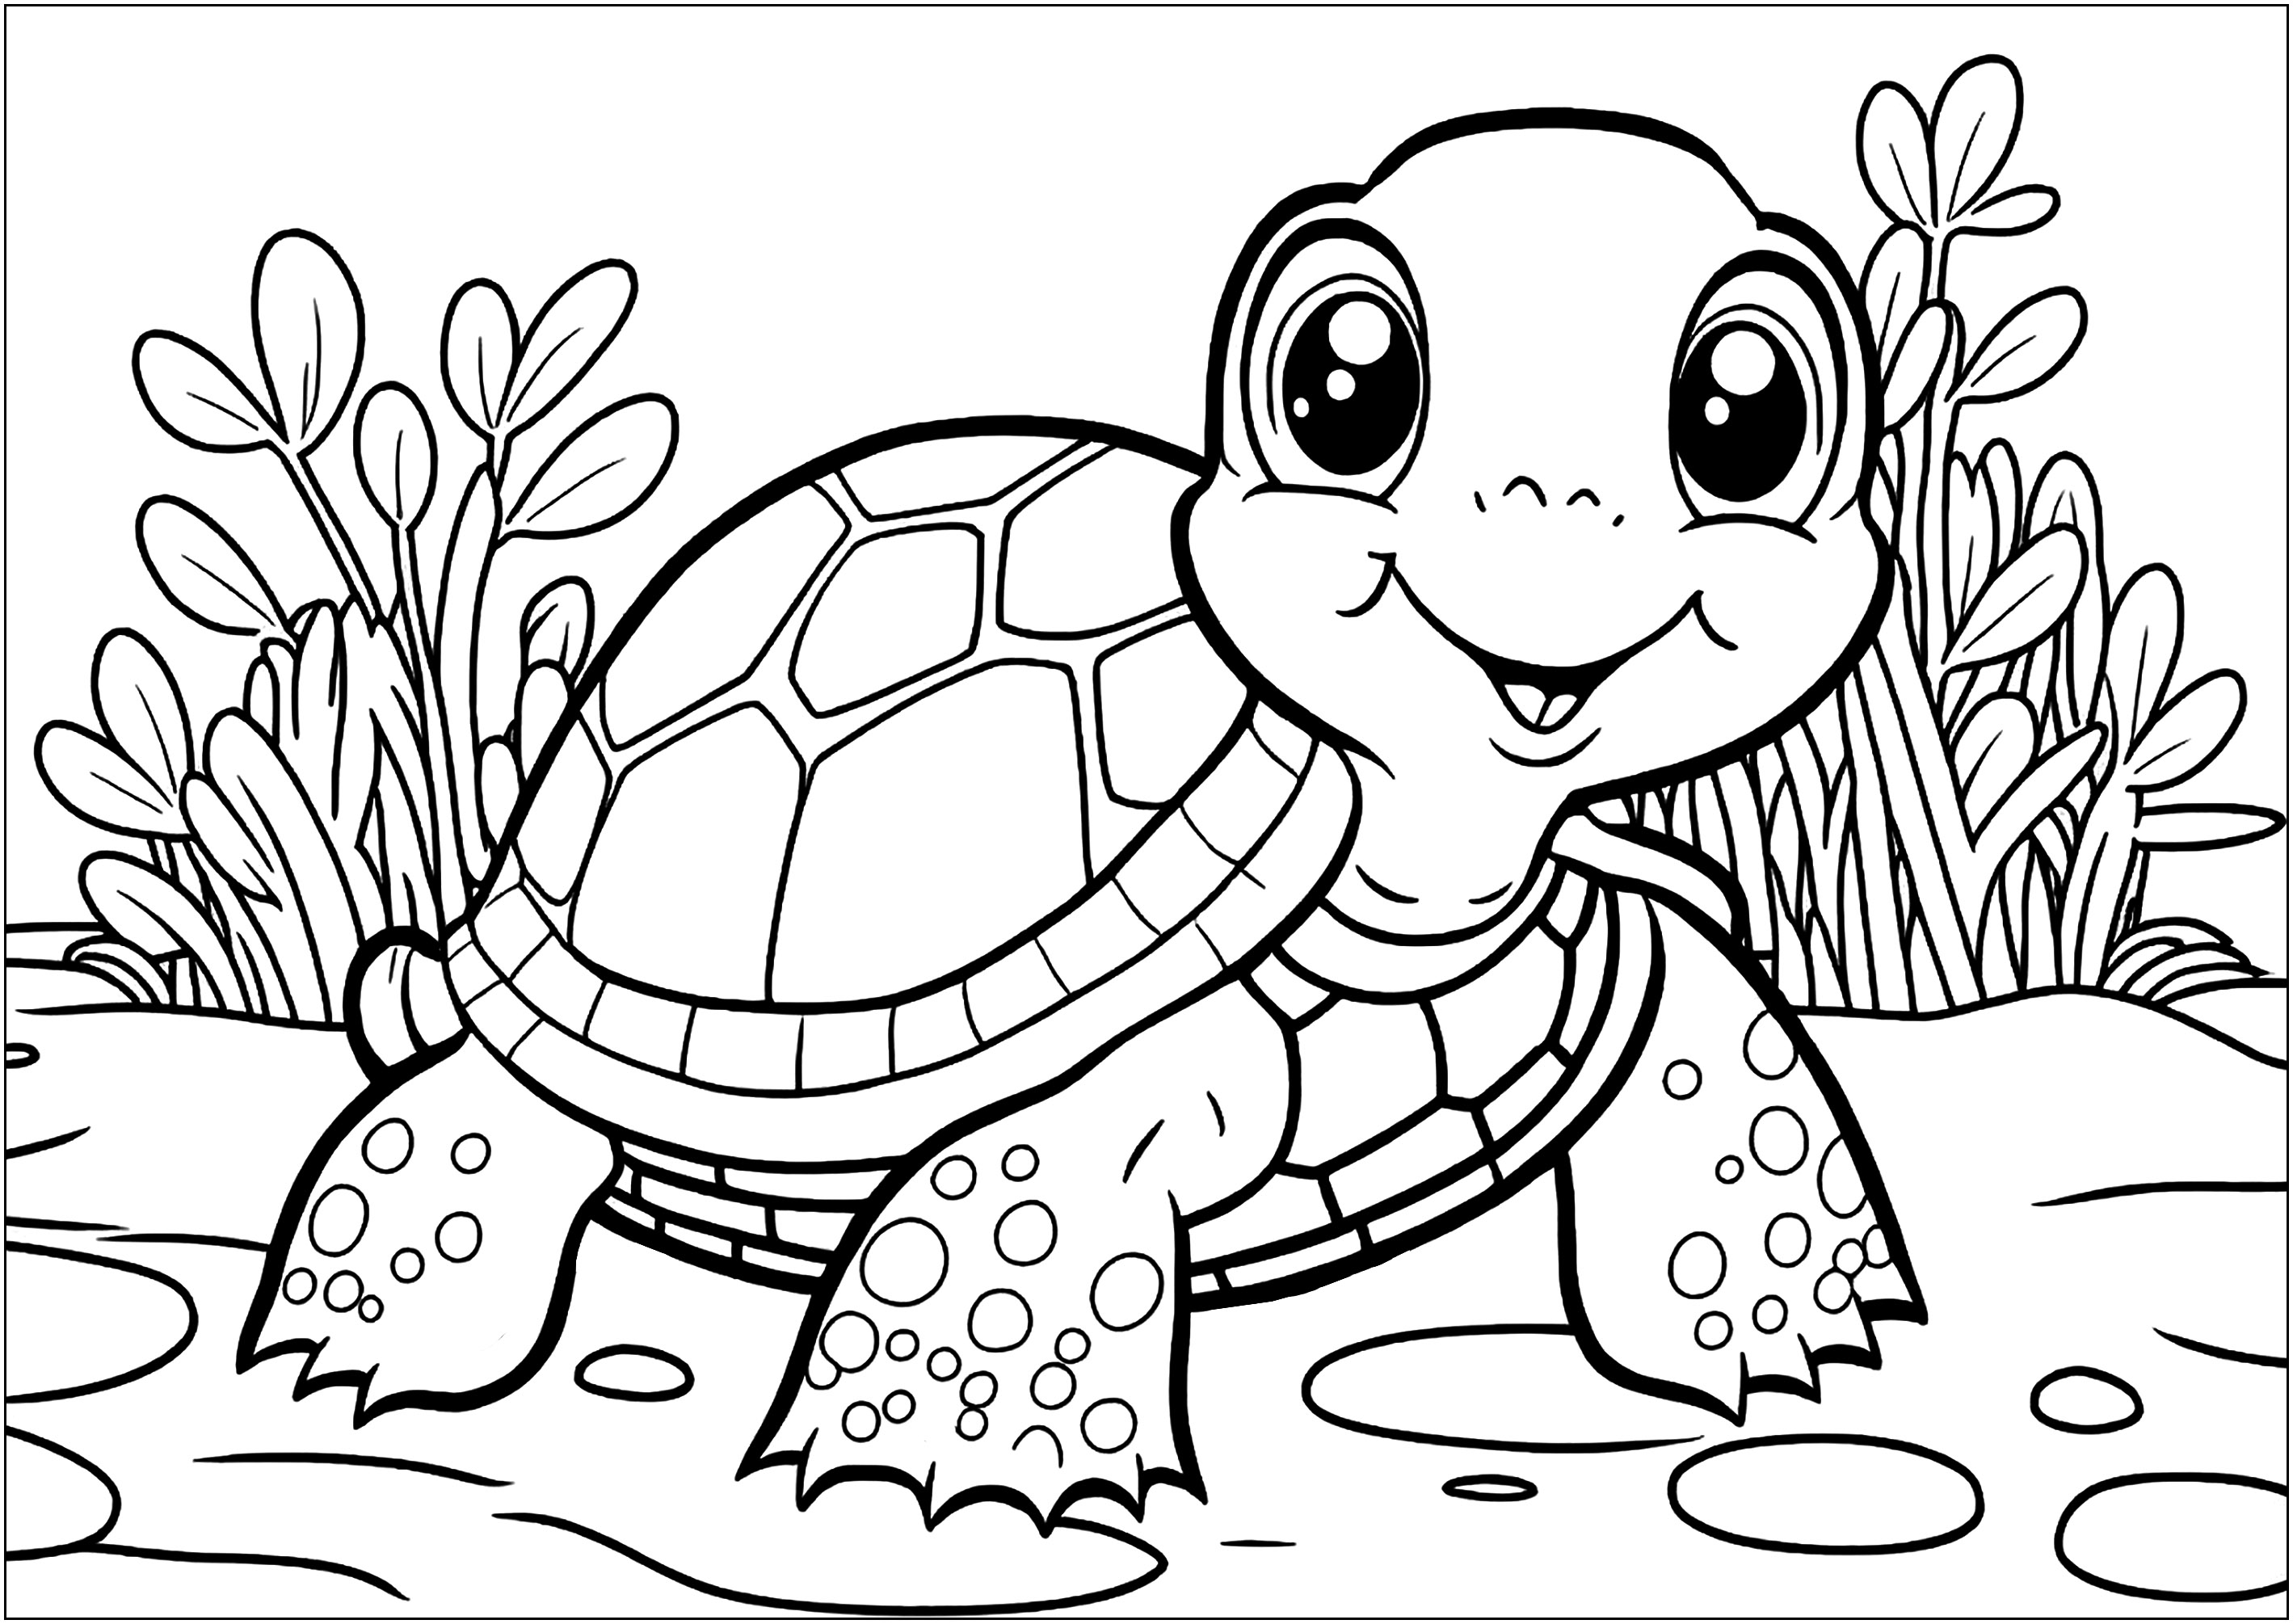 Jolie tortue aux grands yeux, très souriante, à colorier pour les plus jeunes